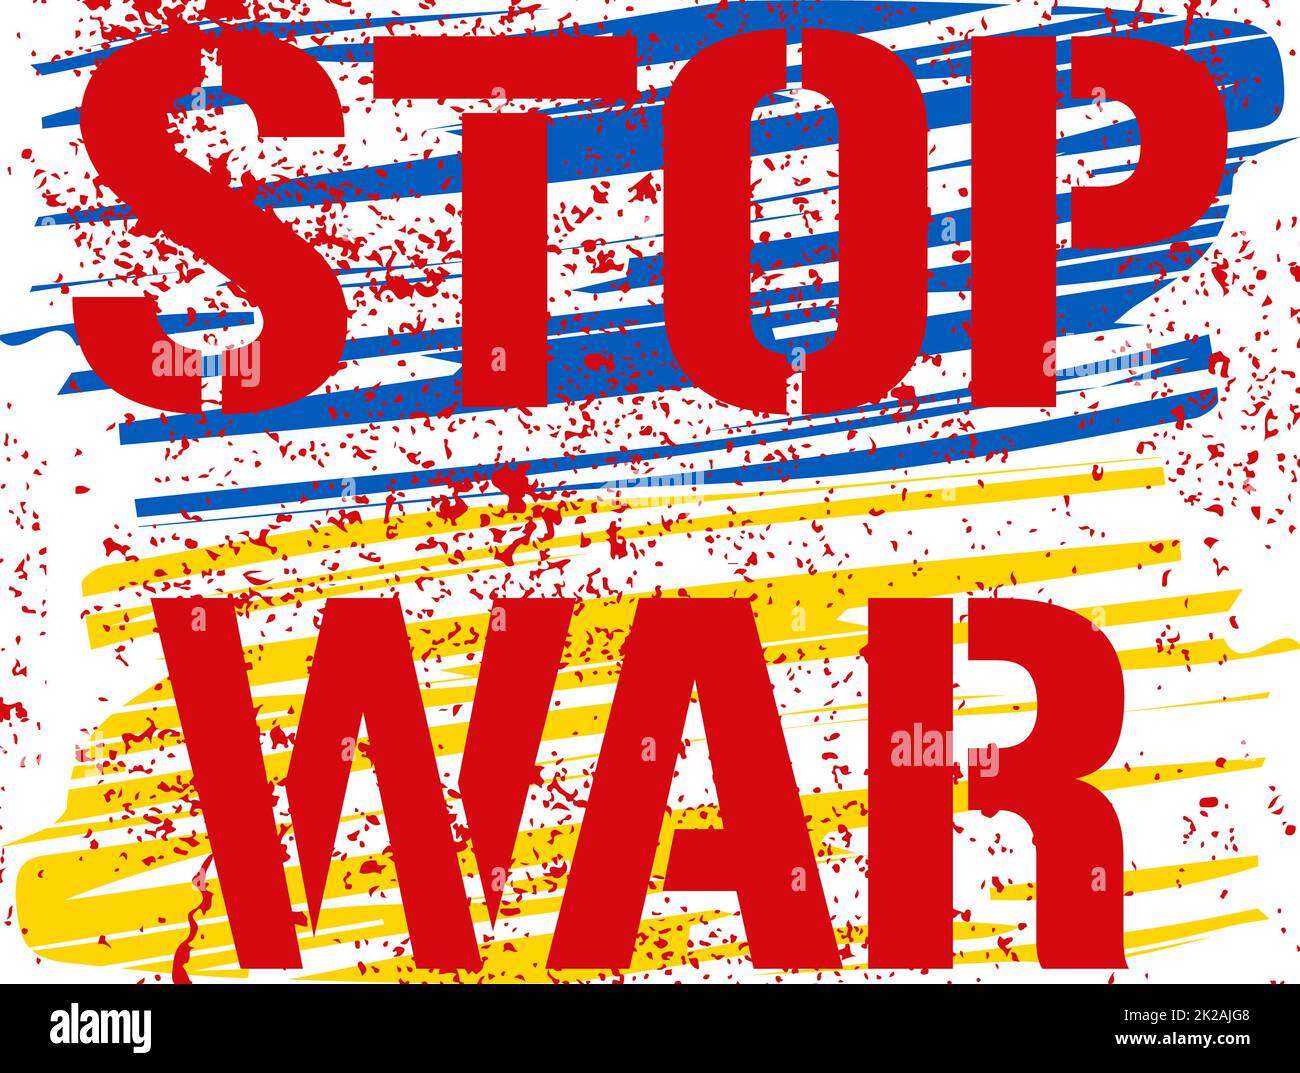 Stop war - Text, der als Blut auf der Farbe für die ukrainische Flagge stilisiert ist. Rotes Graffiti-Protestzeichen. Ruf, den Krieg in der Welt zu beenden. Der bewaffnete Konflikt in der Ukraine muss gestoppt werden. Verdammte Friedensbotschaft. Stockfoto